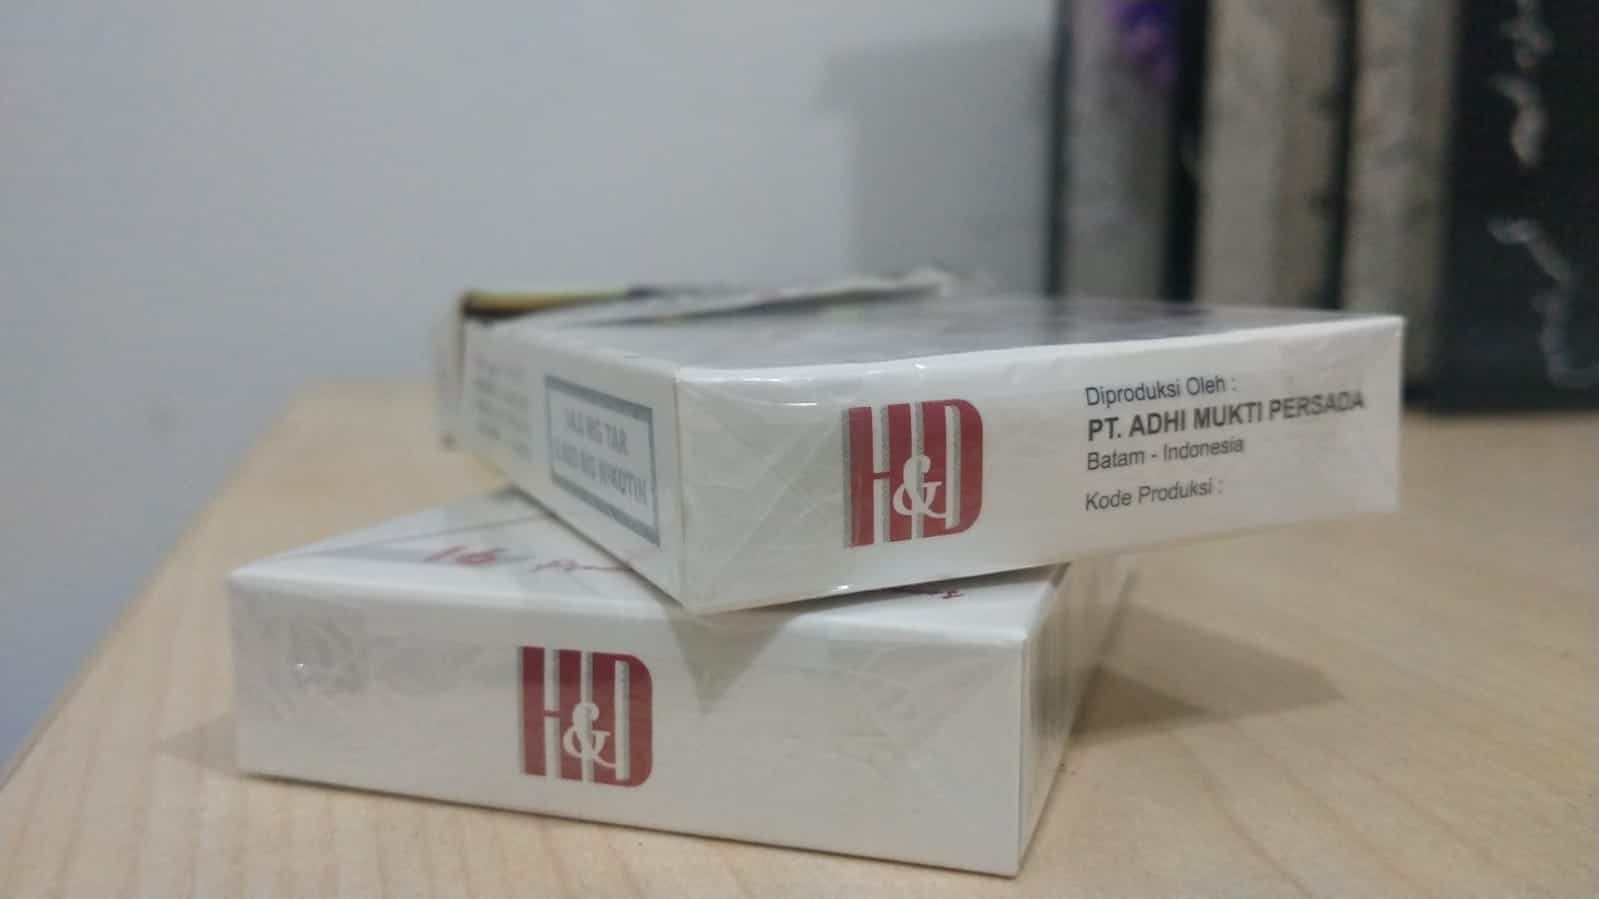 Rokok H&D Marak di Batam, Diduga Bea Cukai Batam Enggan Memberantas